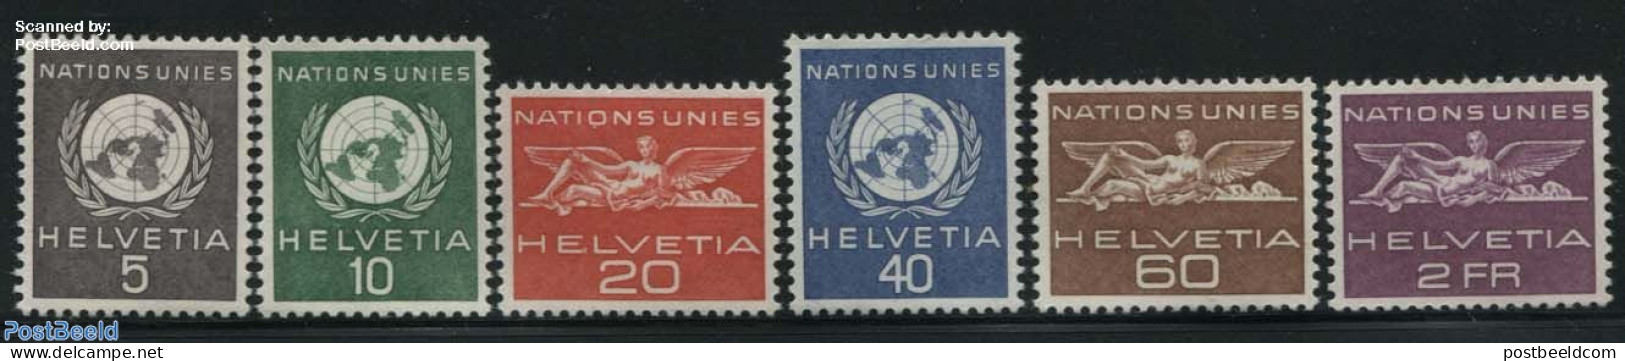 Switzerland 1955 United Nations 6v, Unused (hinged), History - United Nations - Unused Stamps